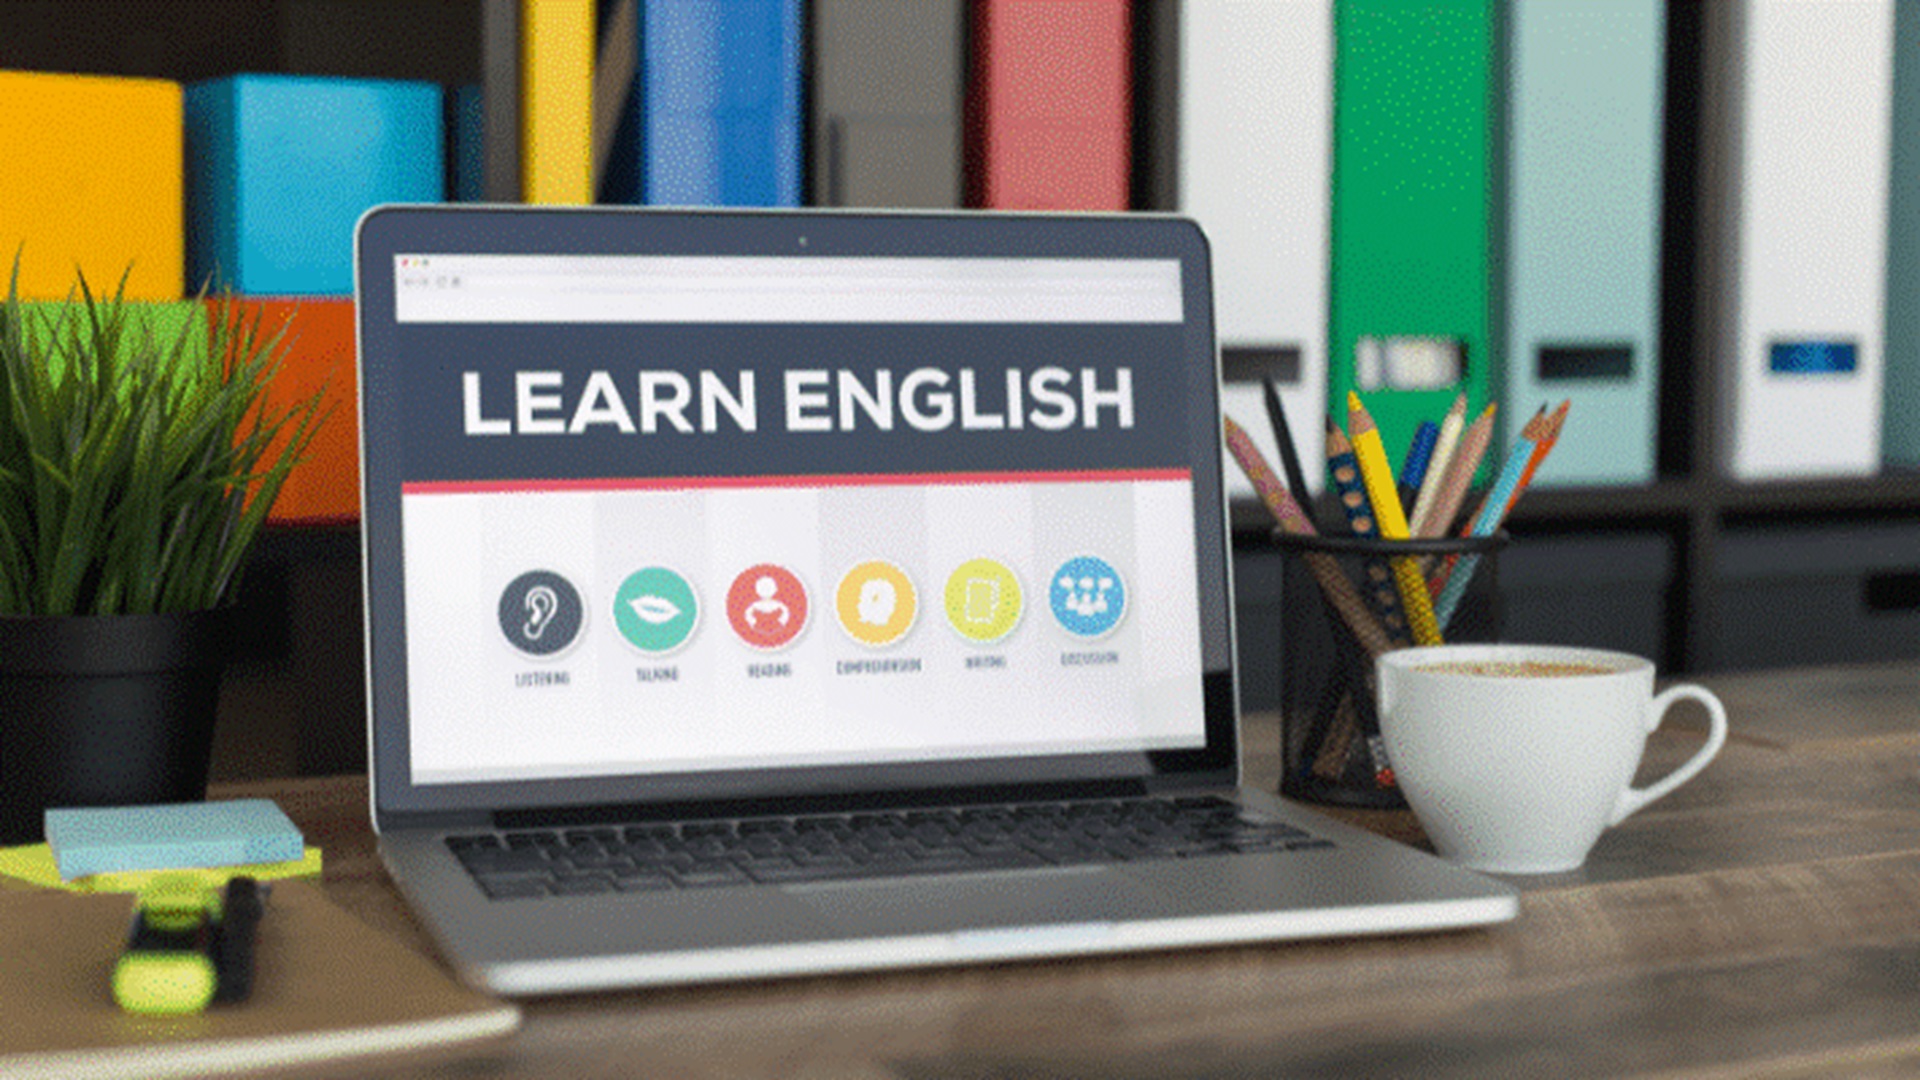 تکنولوژی، تجربه آموزش زبان انگلیسی را اینگونه متحول می کند